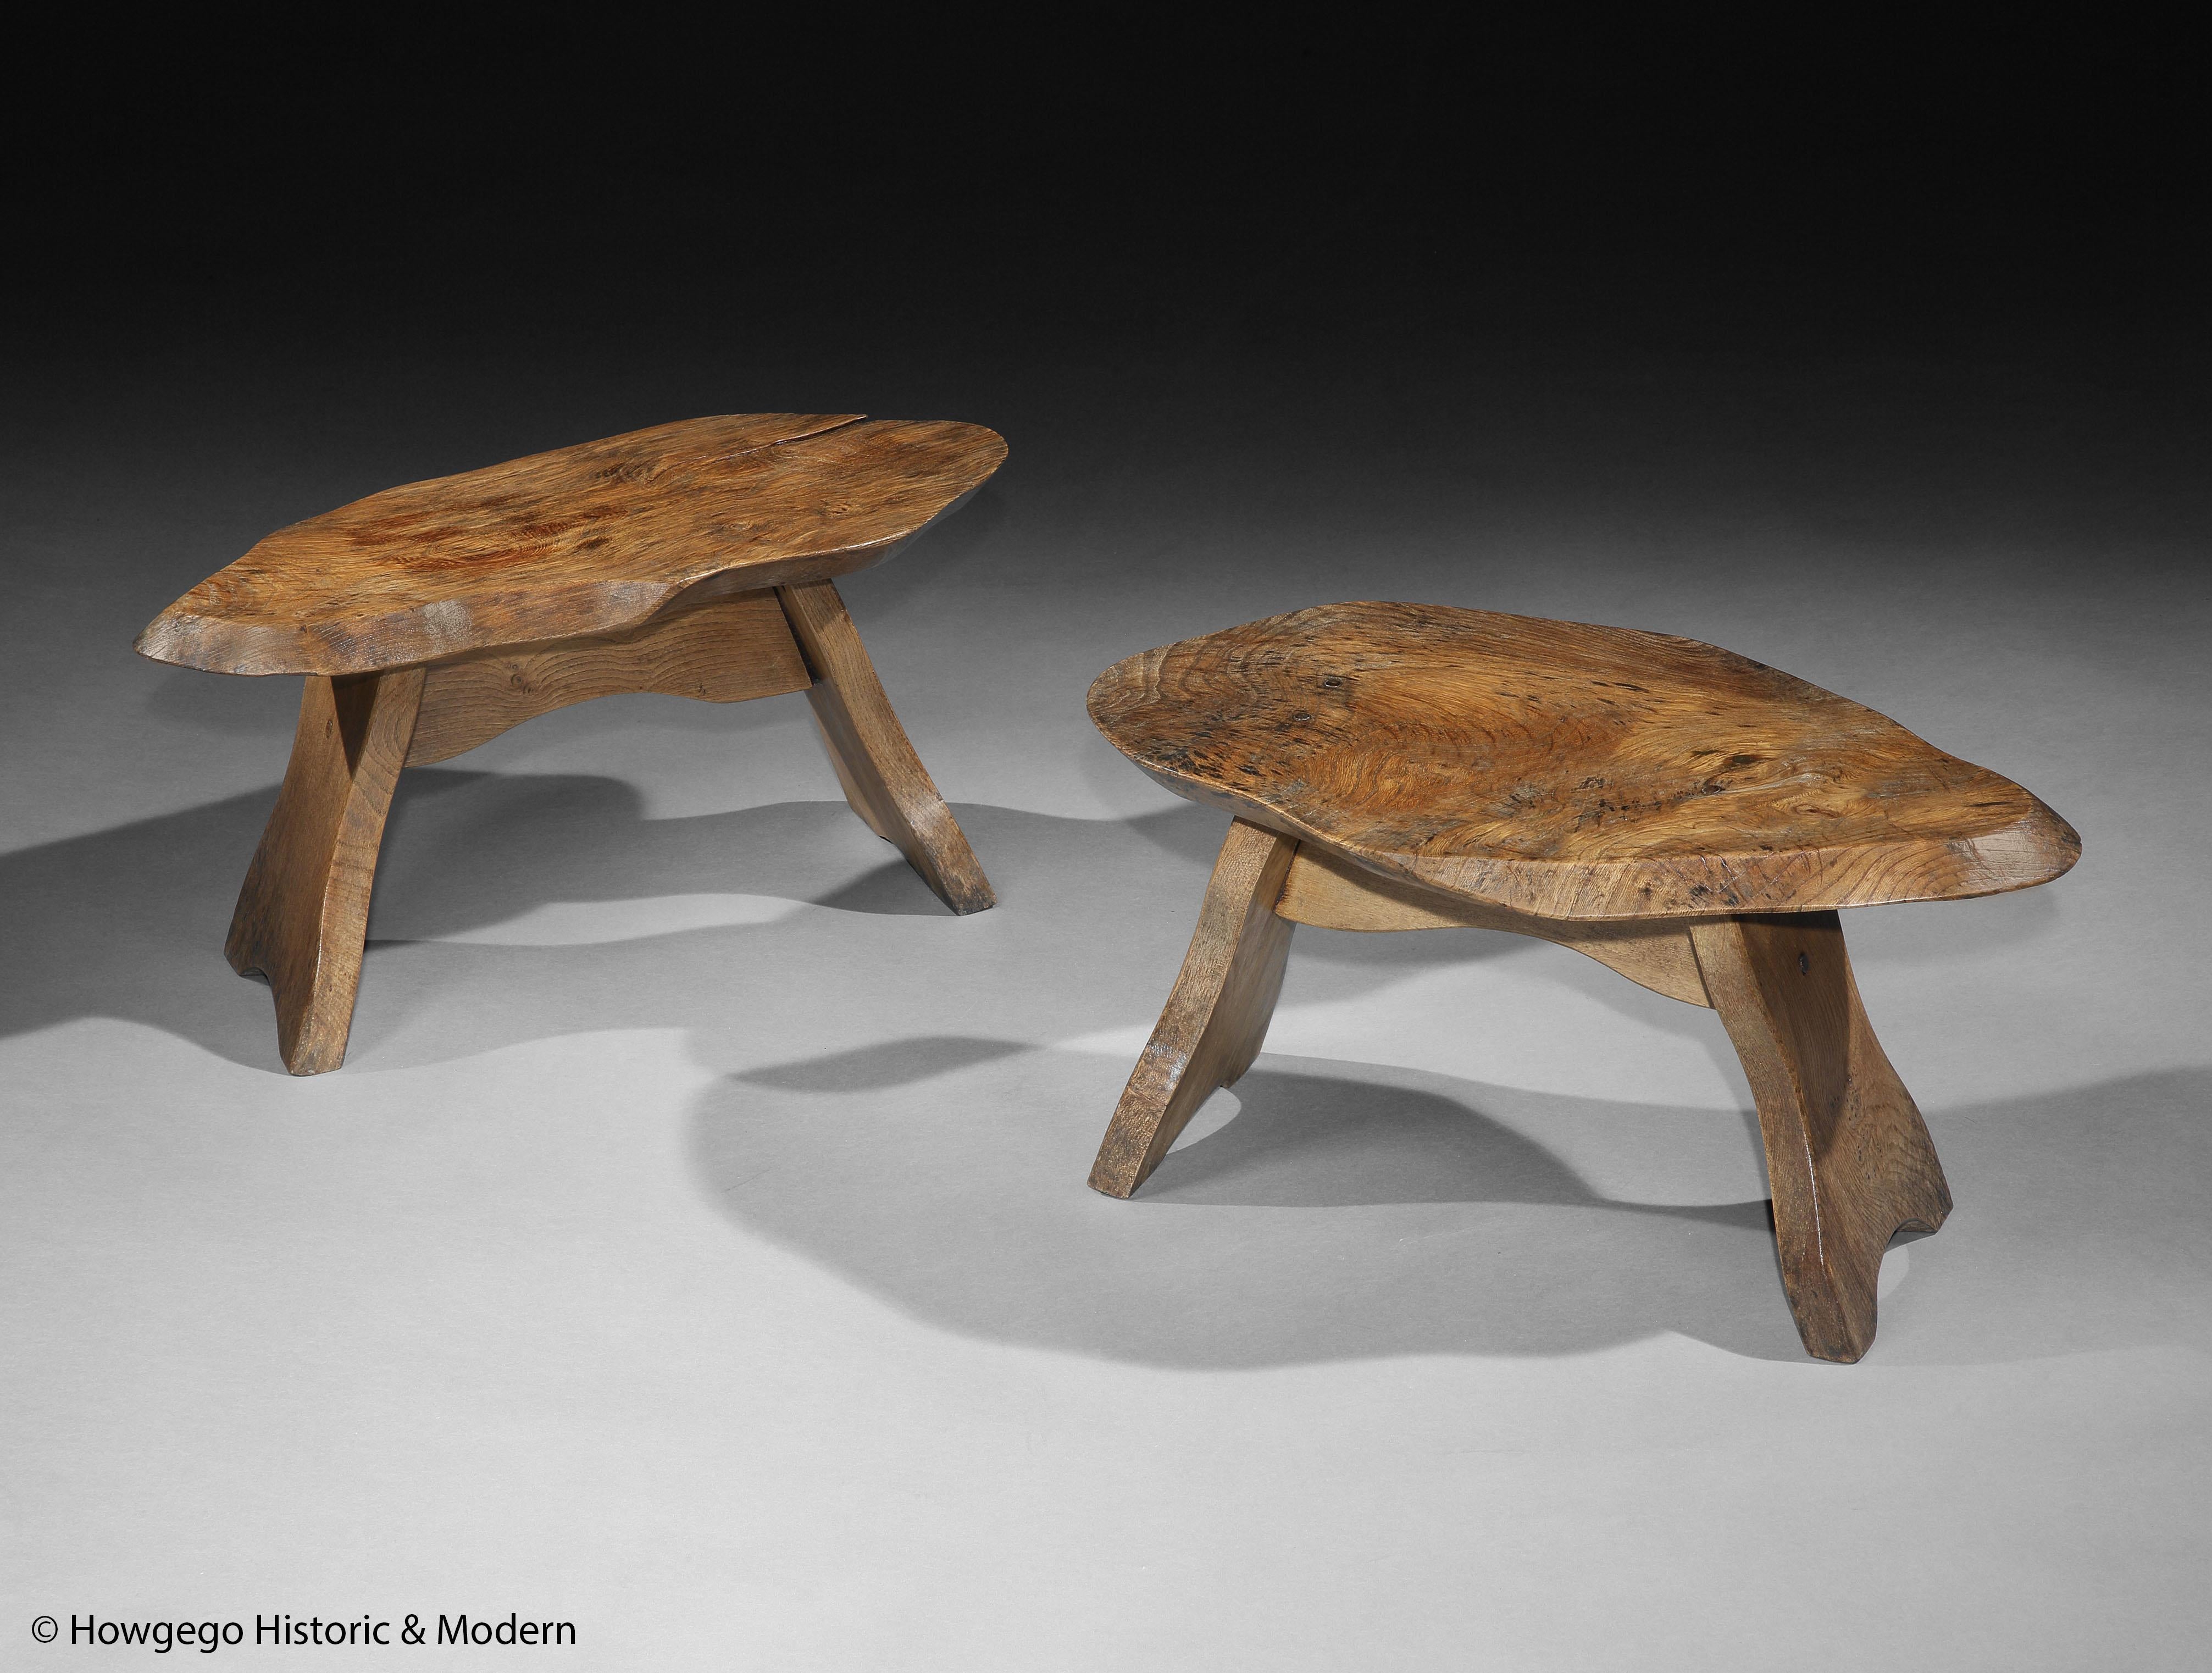 Skulpturale Tische, die die natürlichen Eigenschaften und Formen der Ulme als Inspiration nutzen, um Möbel zu schaffen, die über den Zweck hinausgehen und zu organischer Kunst werden.
Die Patina und die Abnutzung, die sich im Laufe der Zeit